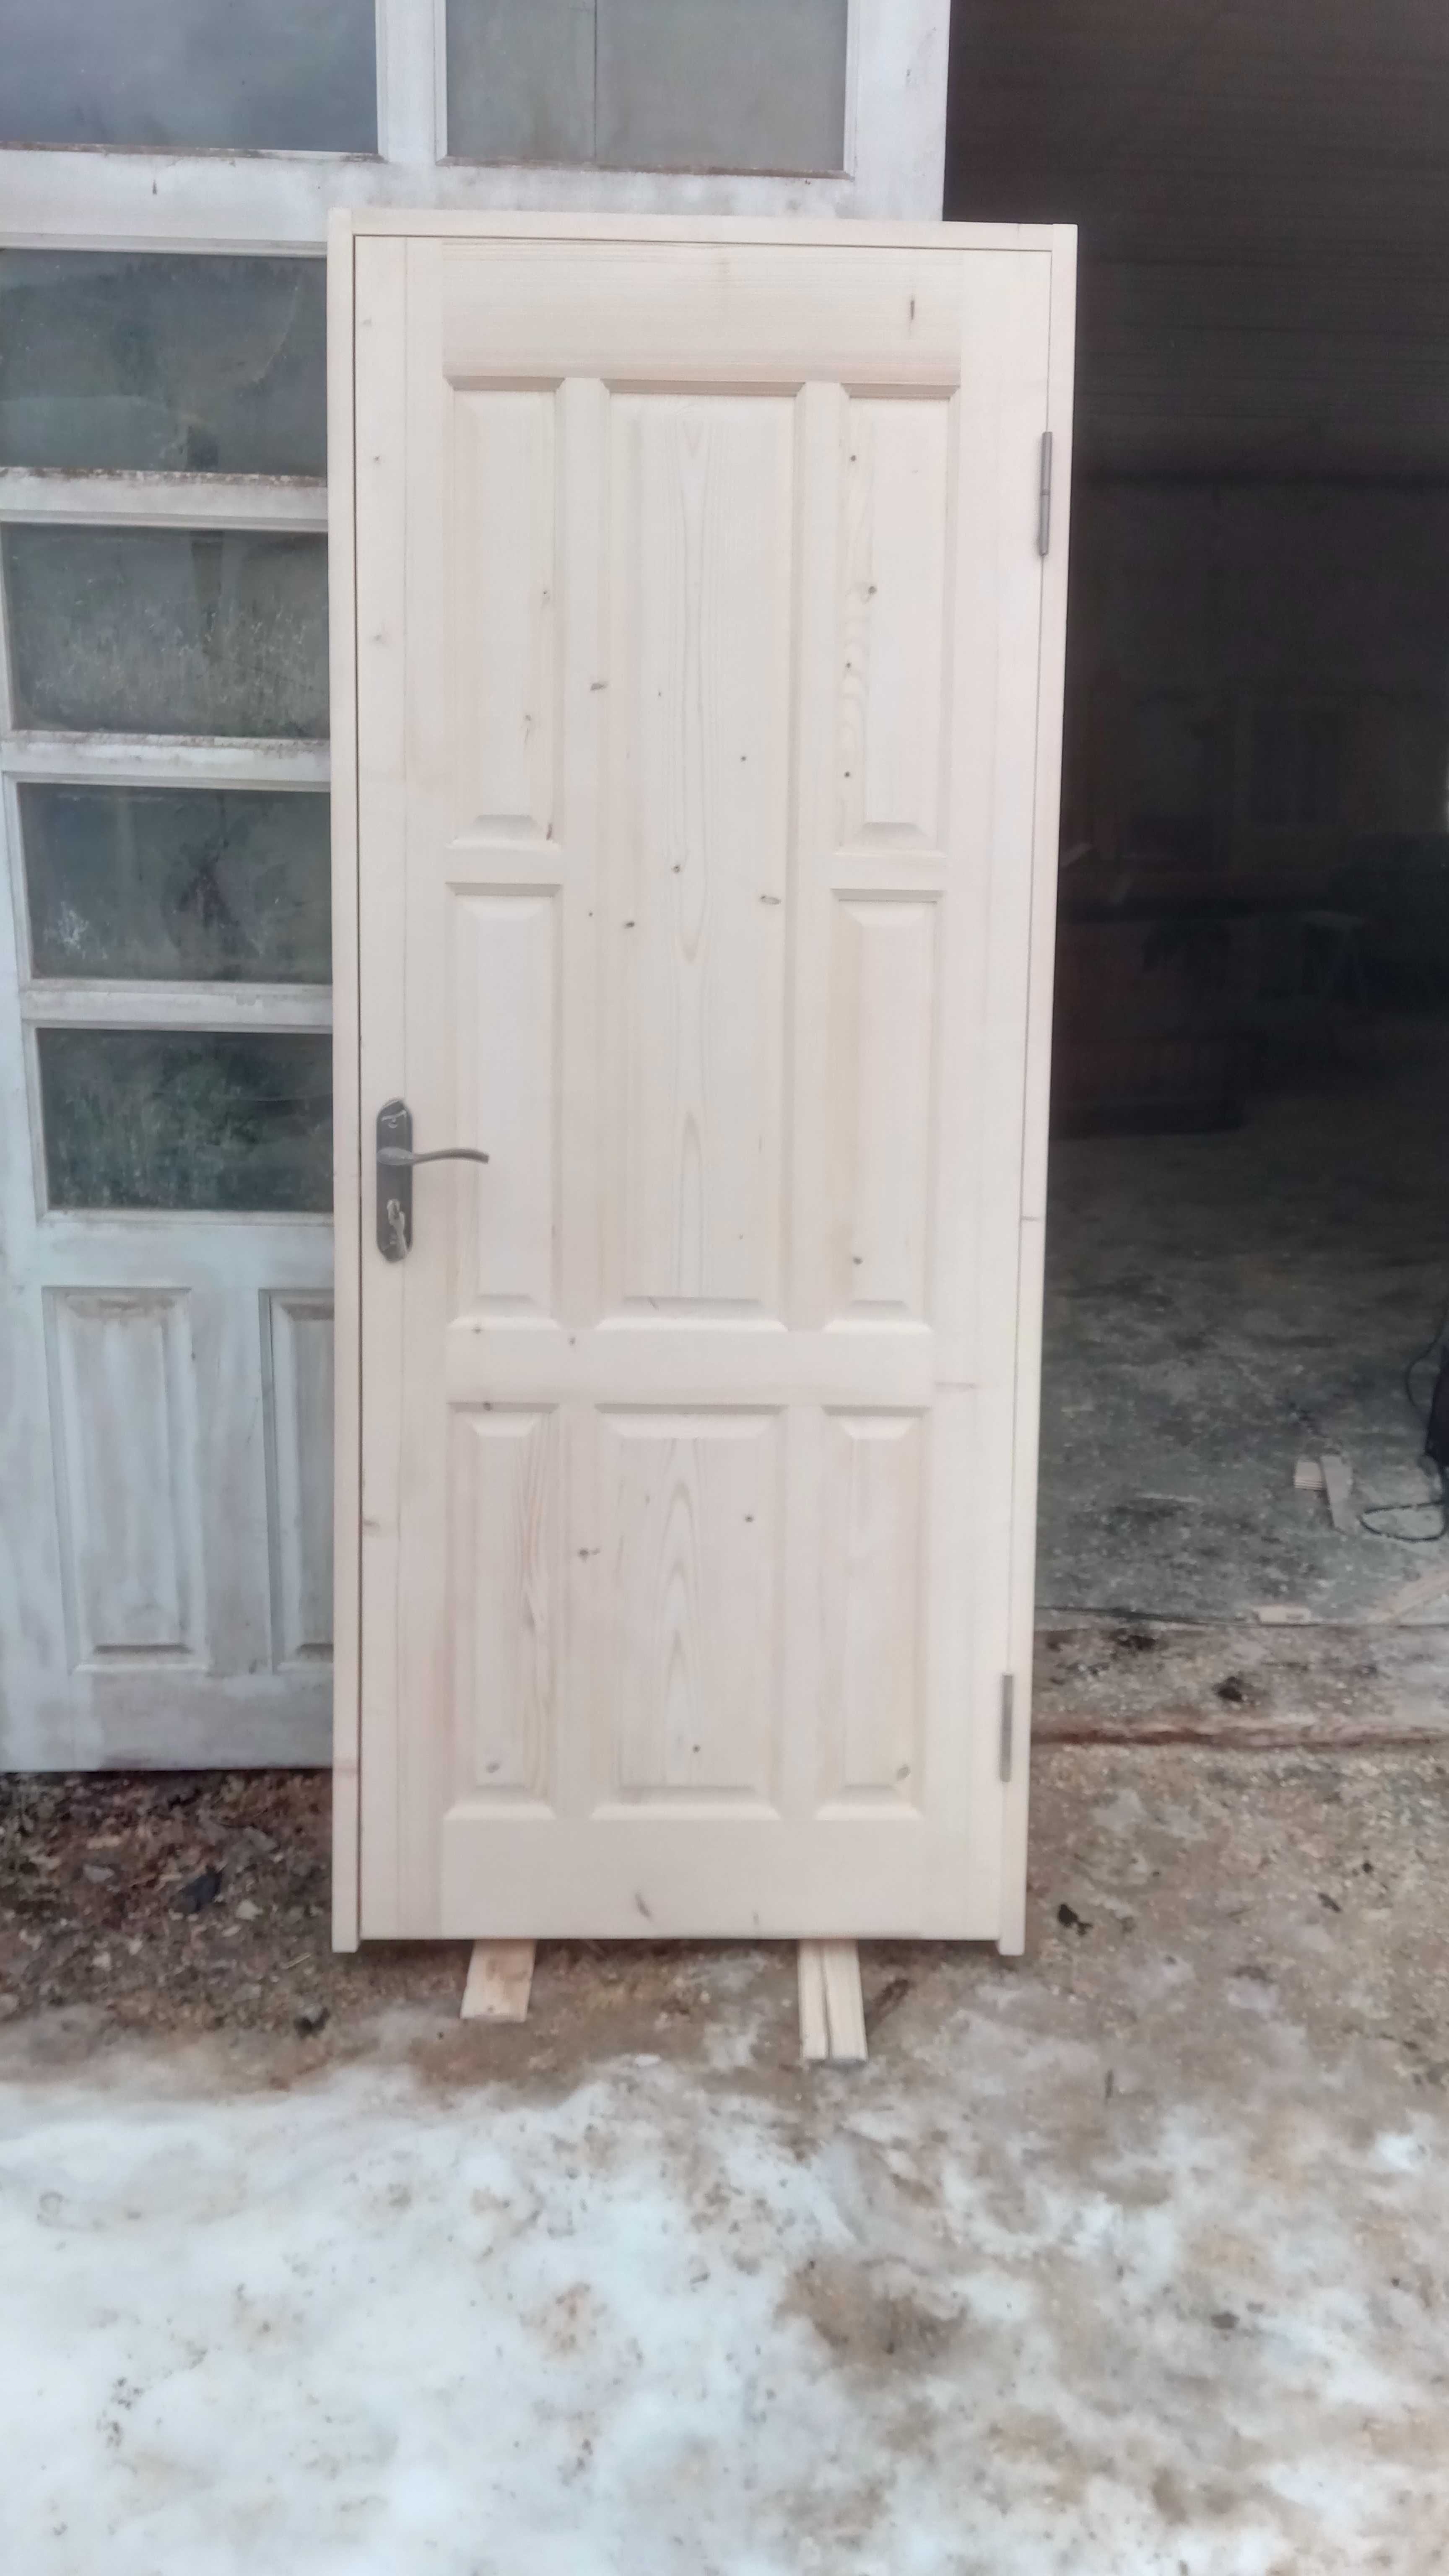 Двері  дерев'яні